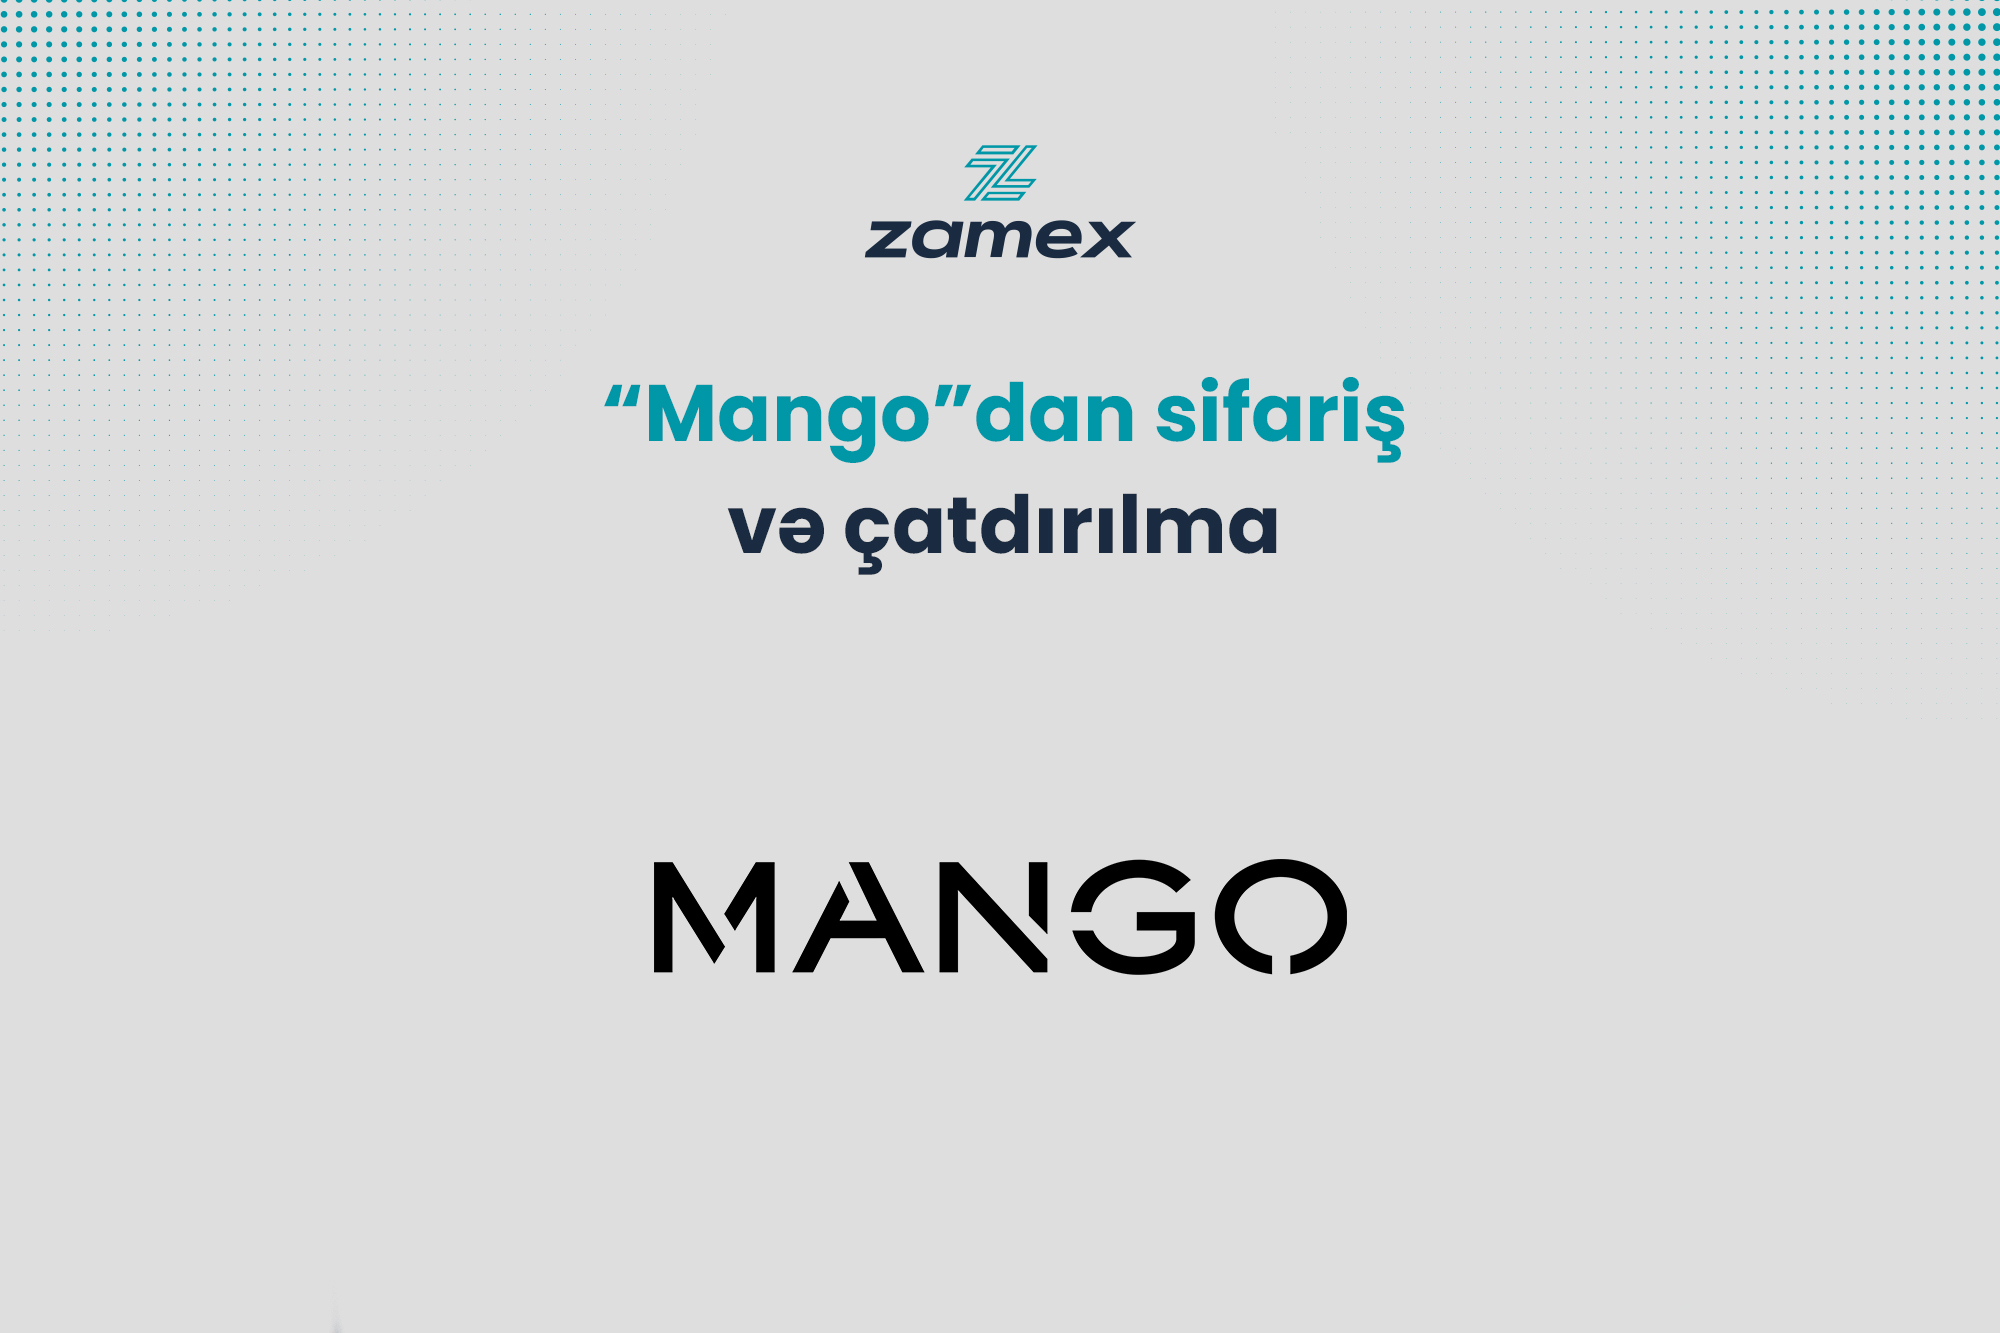  “Mango”dan sifariş və çatdırılma